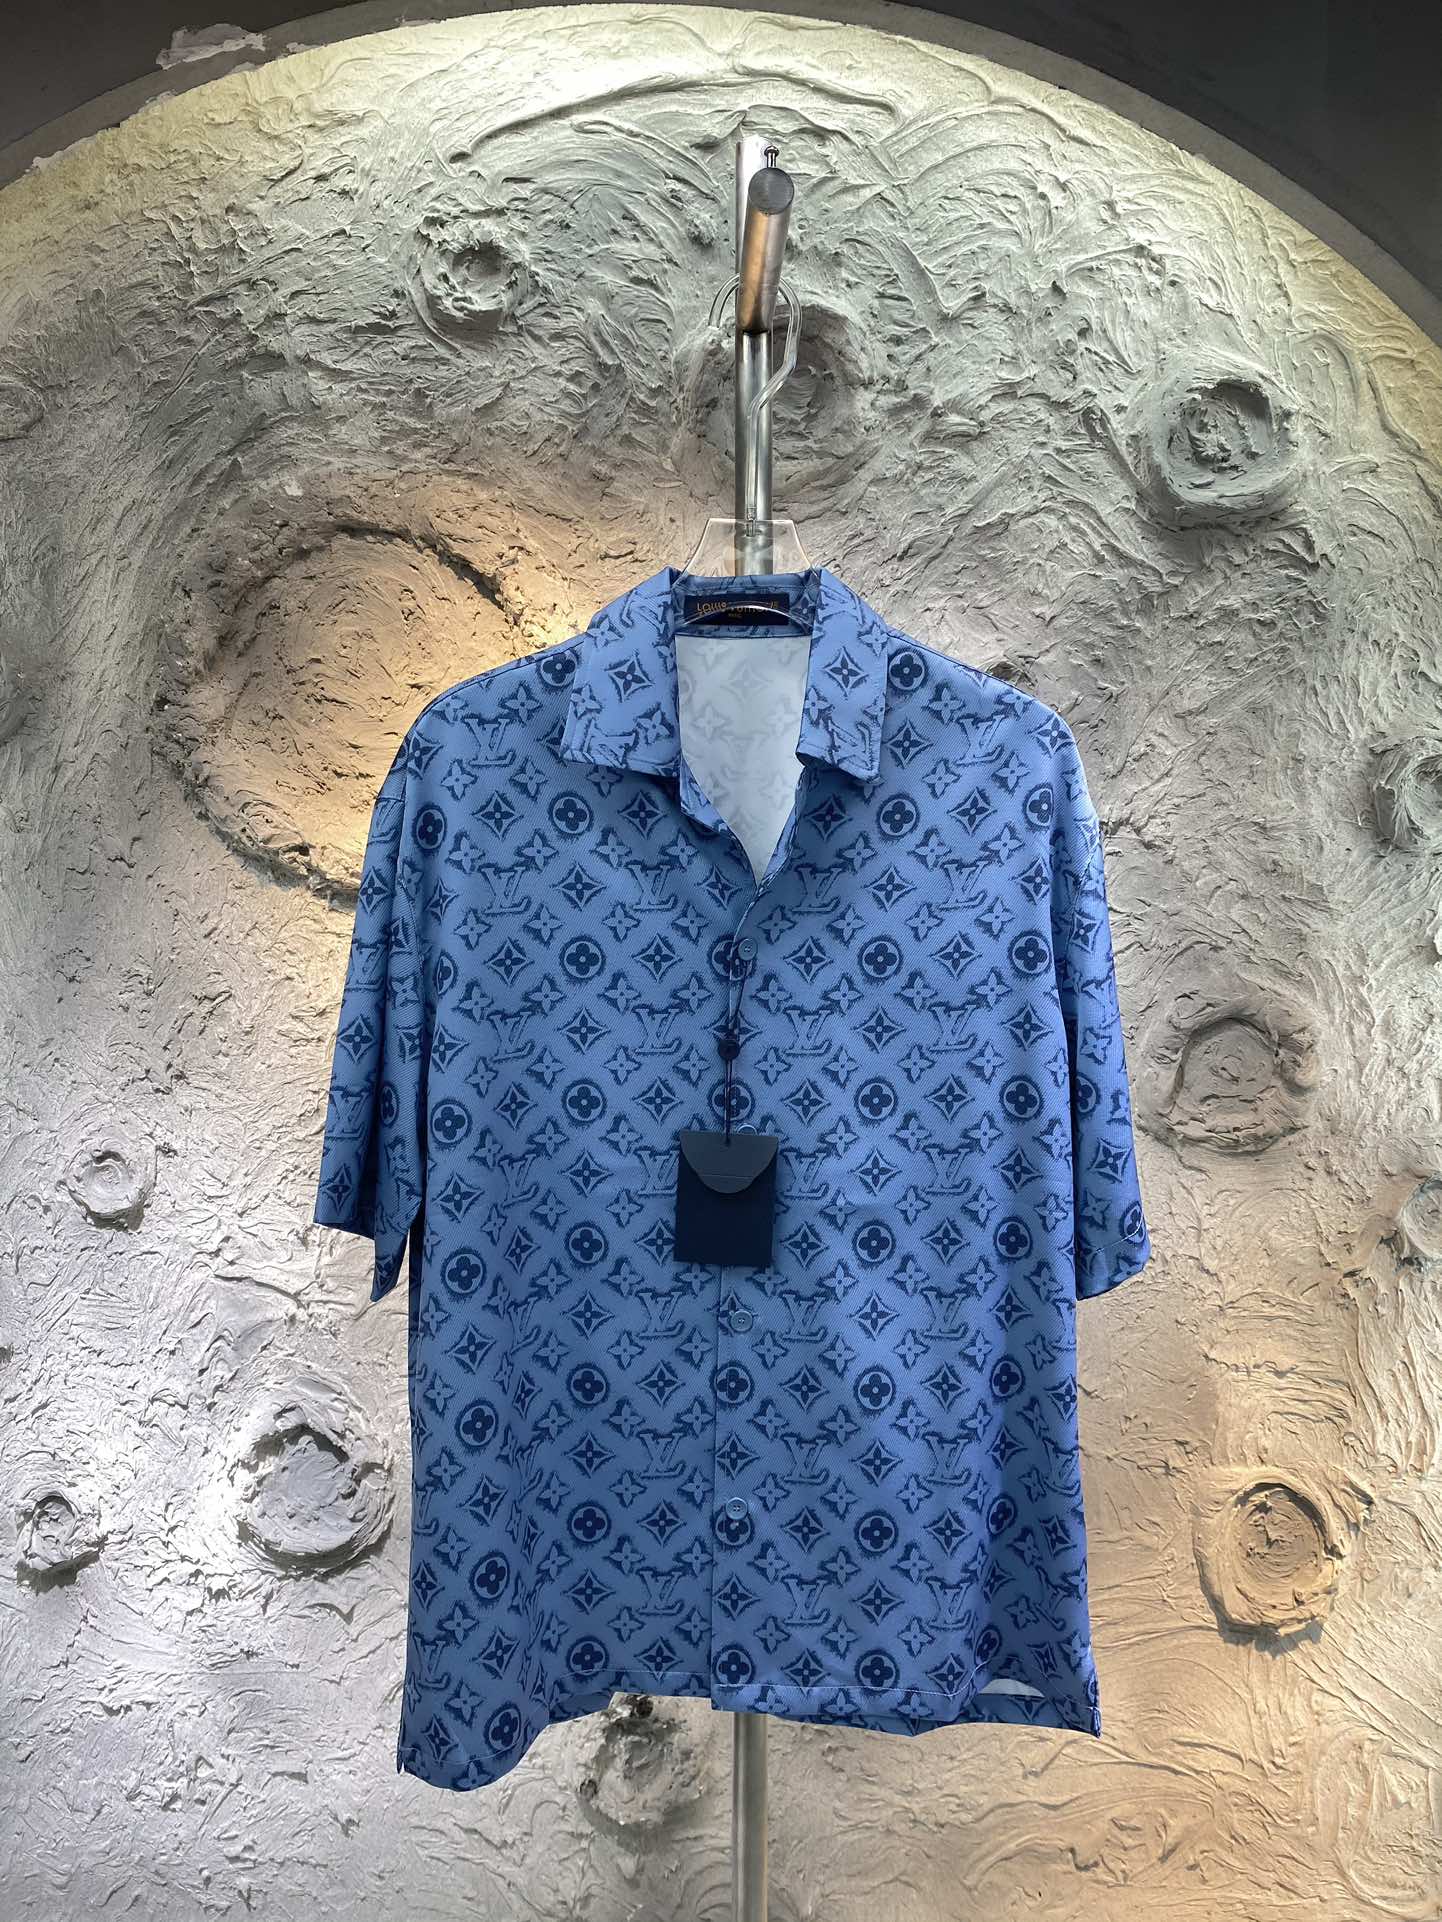 Louis Vuitton Odzież Koszule i bluzki Szorty Stroje dwuczęściowe i pasujące zestawy Replica projektantów najwyższej jakości
 Unisex Casual